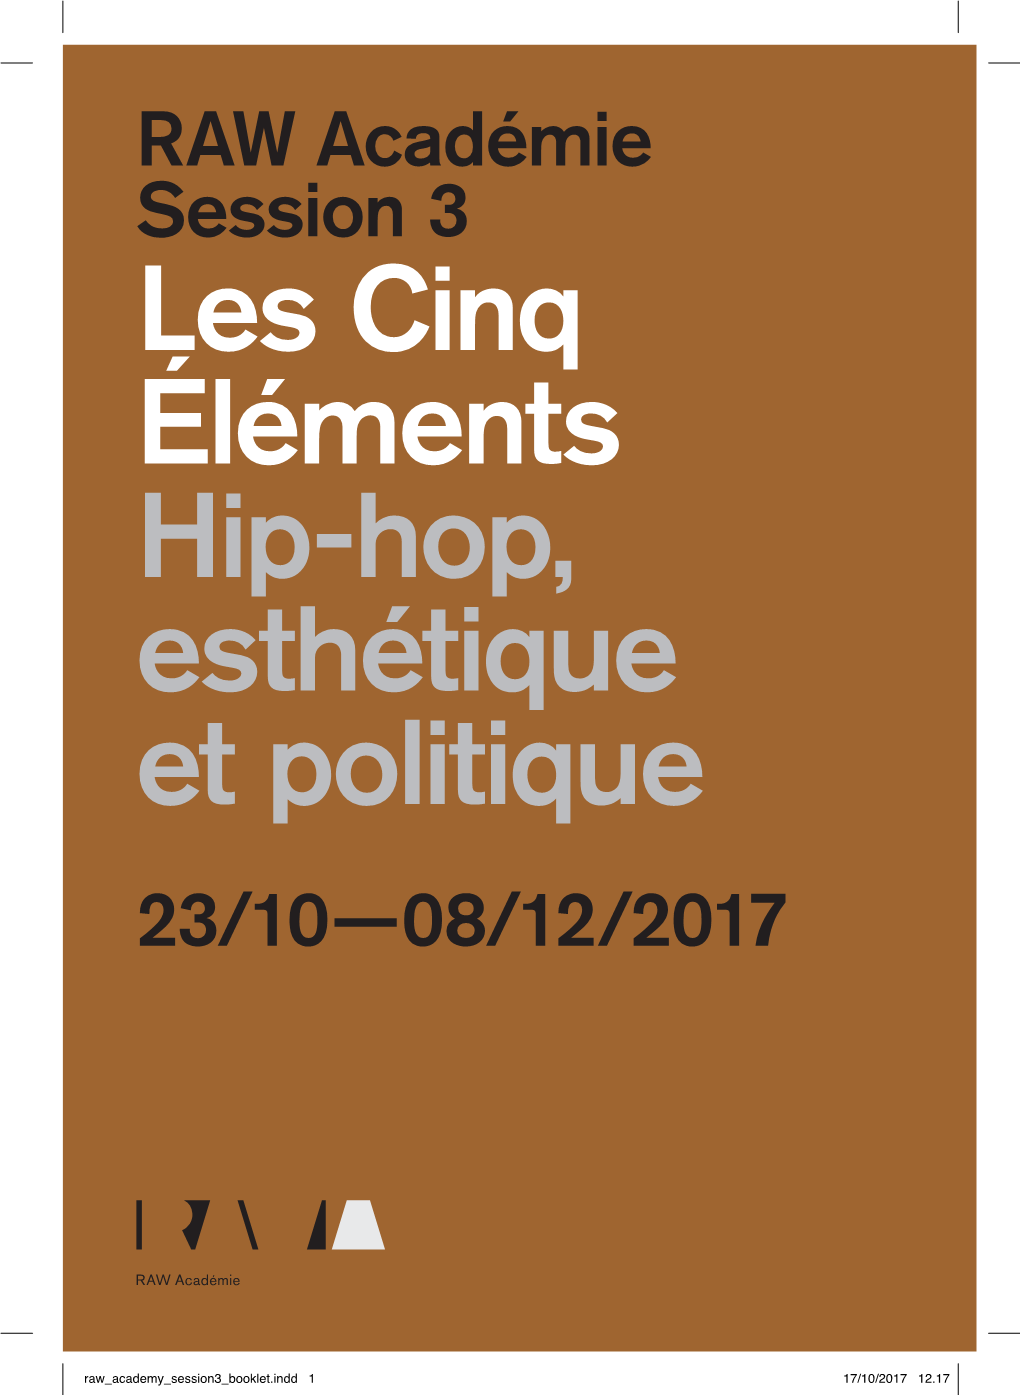 Les Cinq Éléments Hip-Hop, Esthétique Et Politique Sous La Direction Du Journal Rappé 5 the Five Elements Hip Hop, Aesthetics and Politics Directed by Journal Rappé